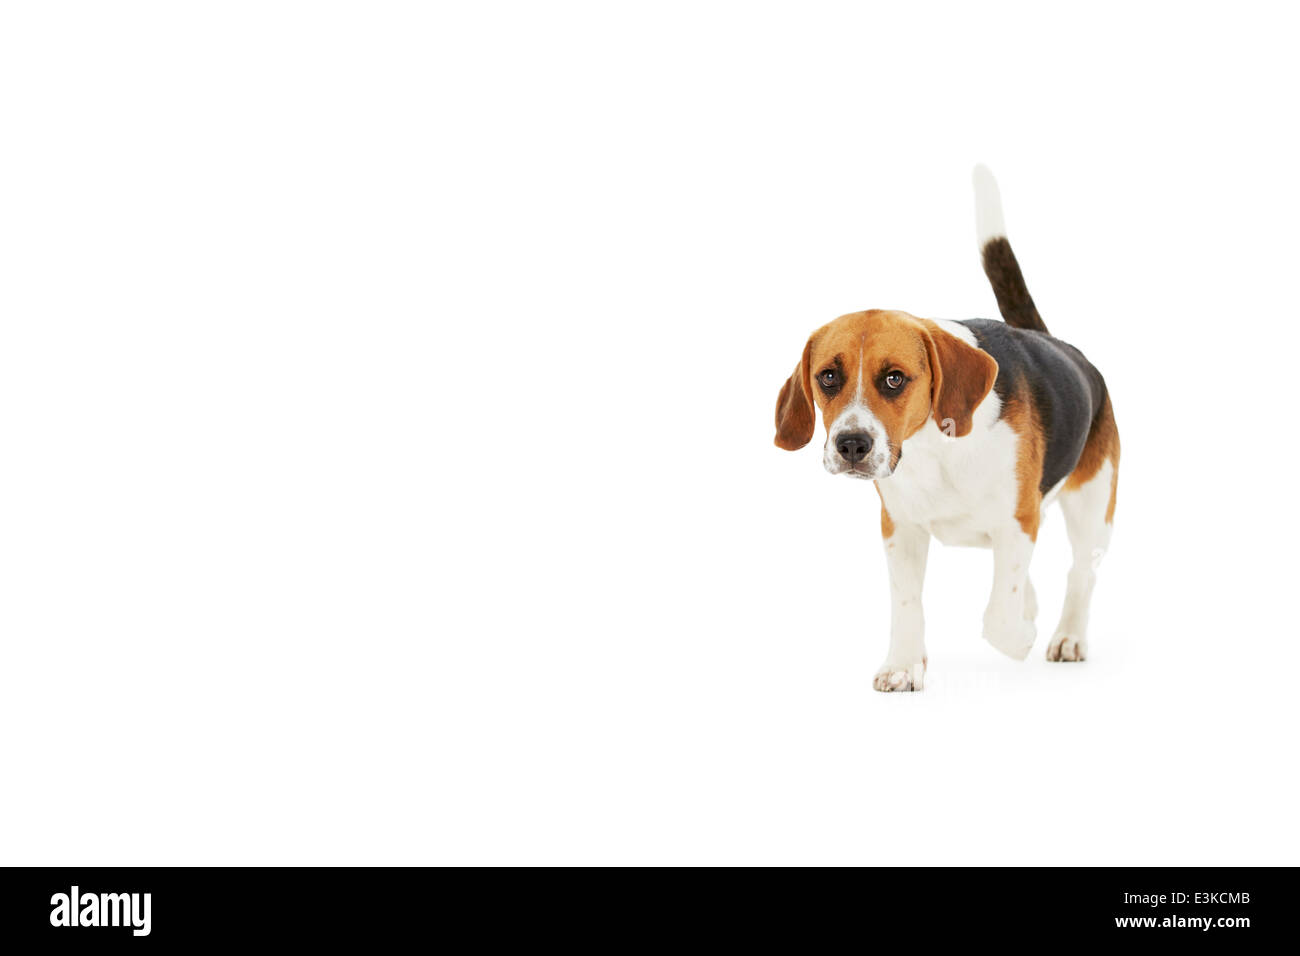 Portrait de chien beagle Walking Against White Background Banque D'Images